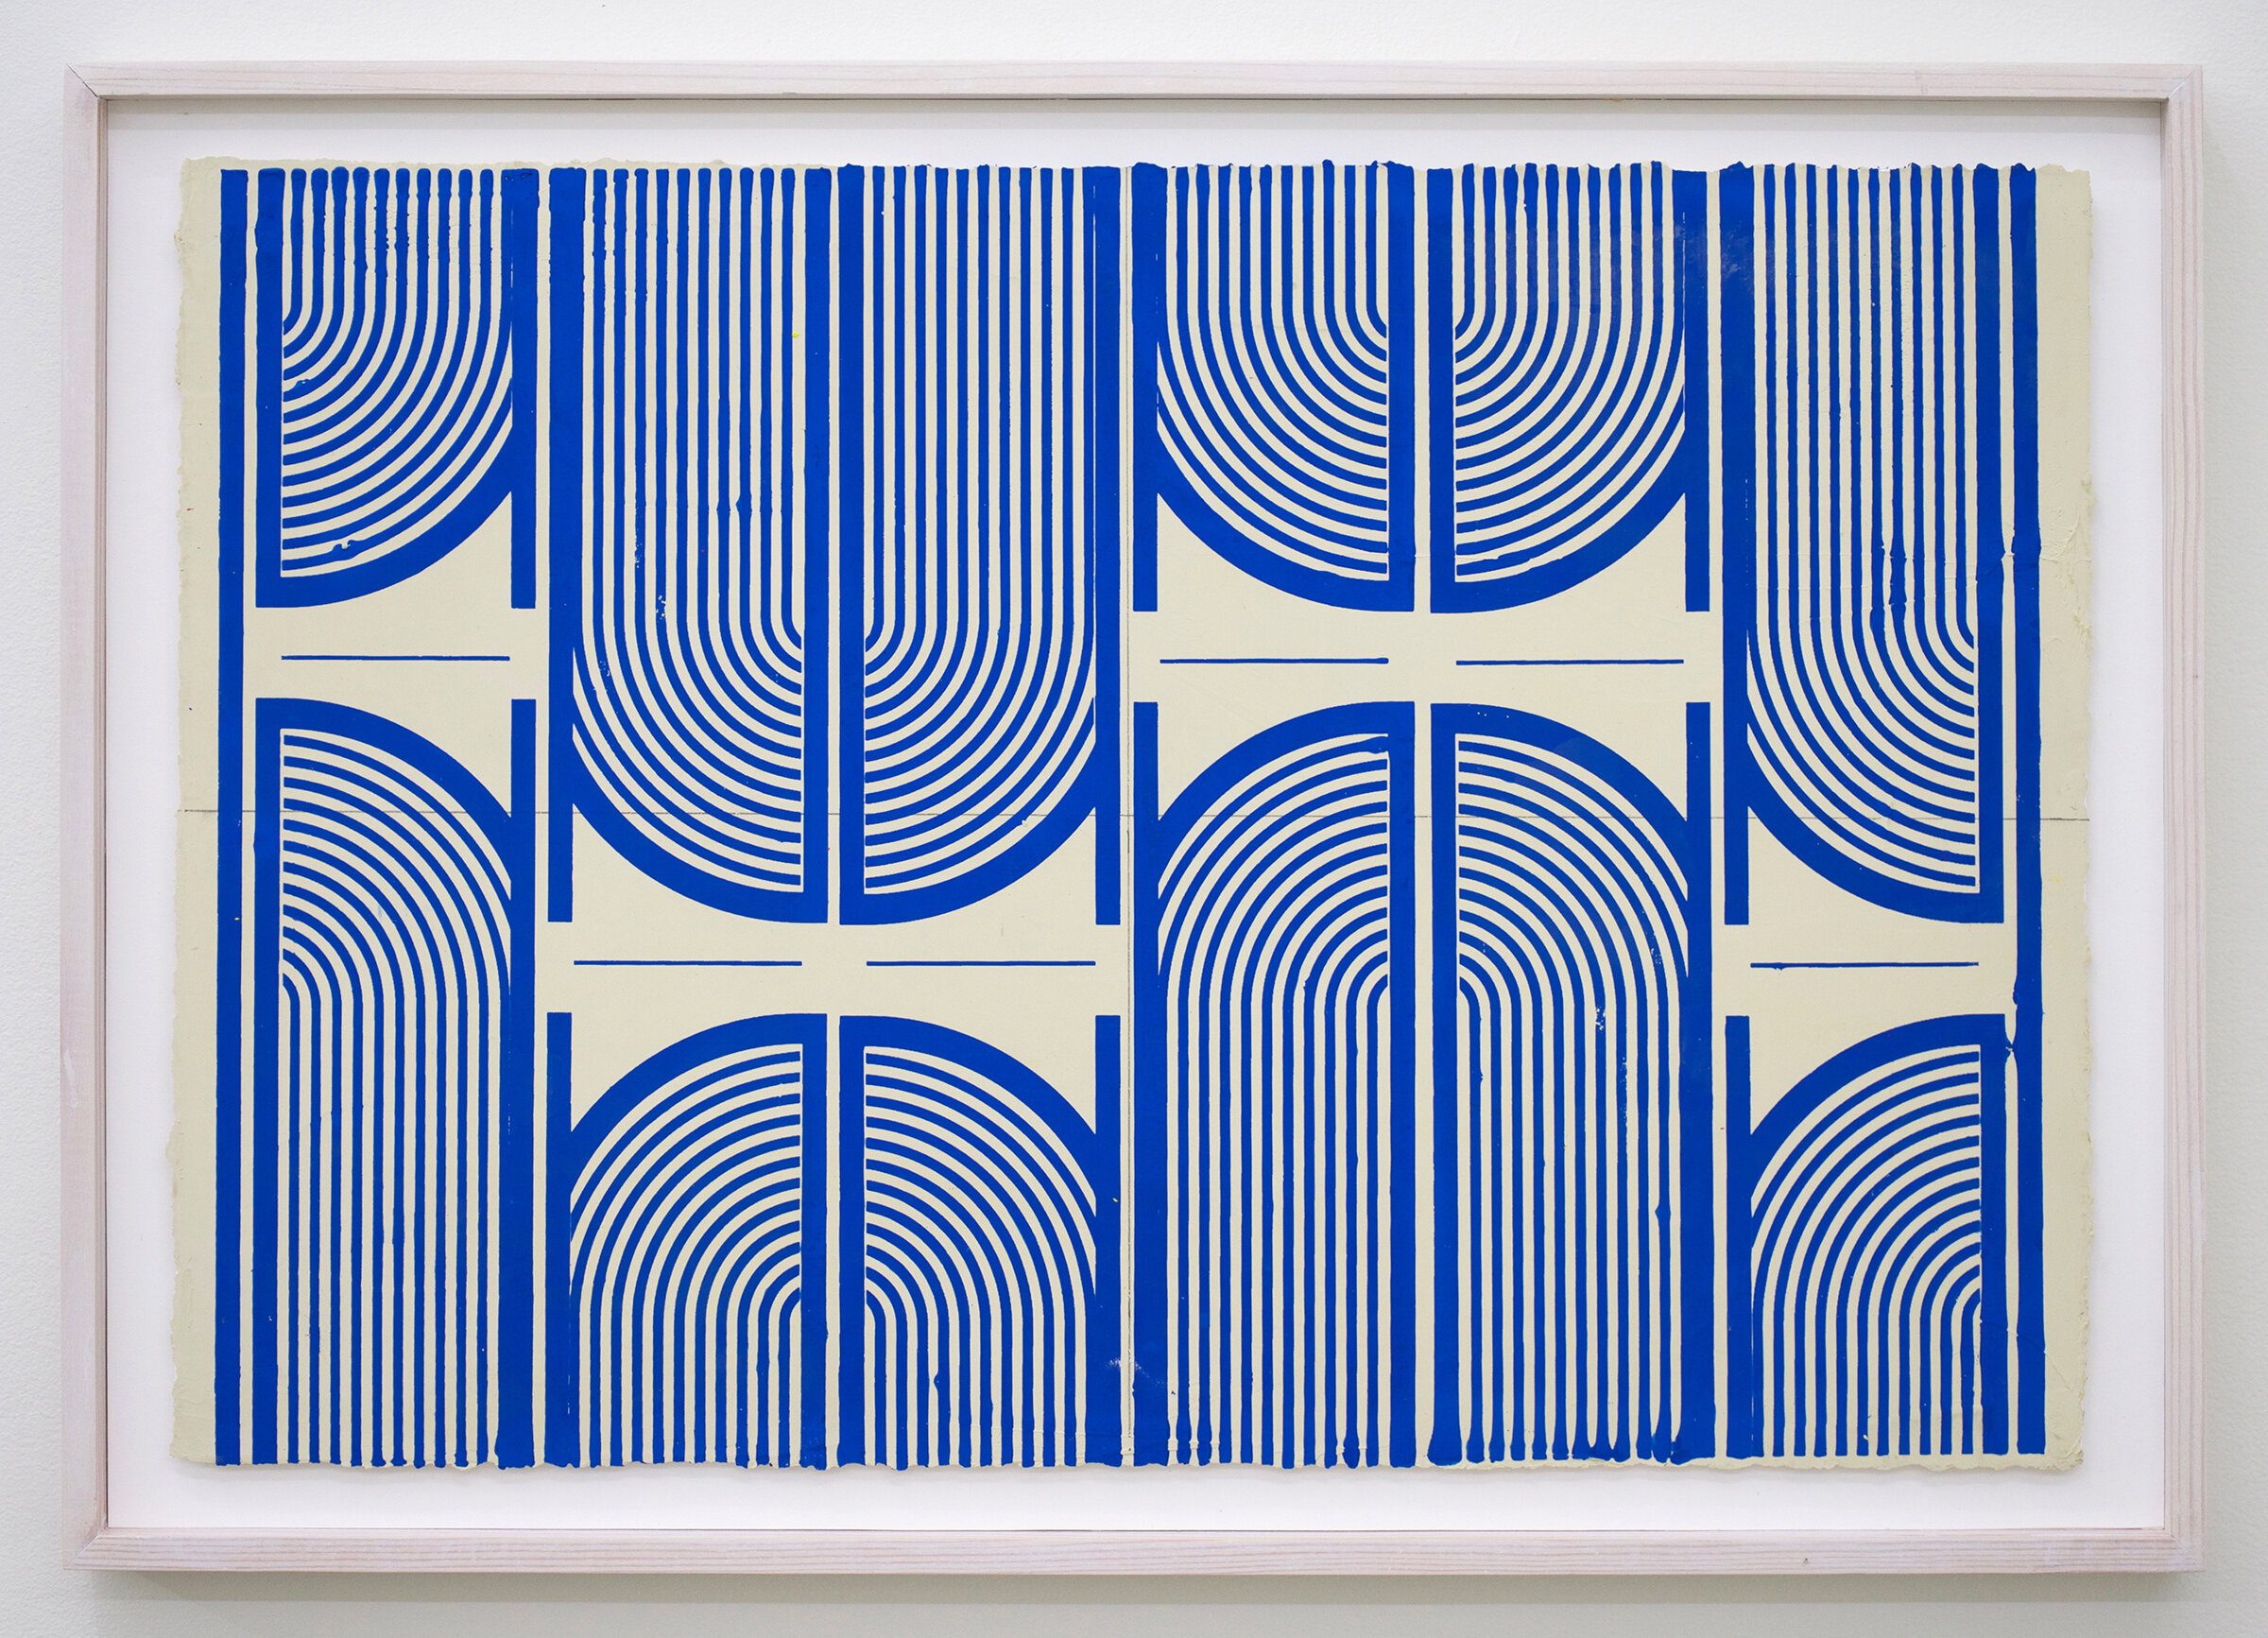  ELISE FERGUSON    Vent -Blue , 2018 pigmented plaster on paper 17.25" x 24.75" (framed) 